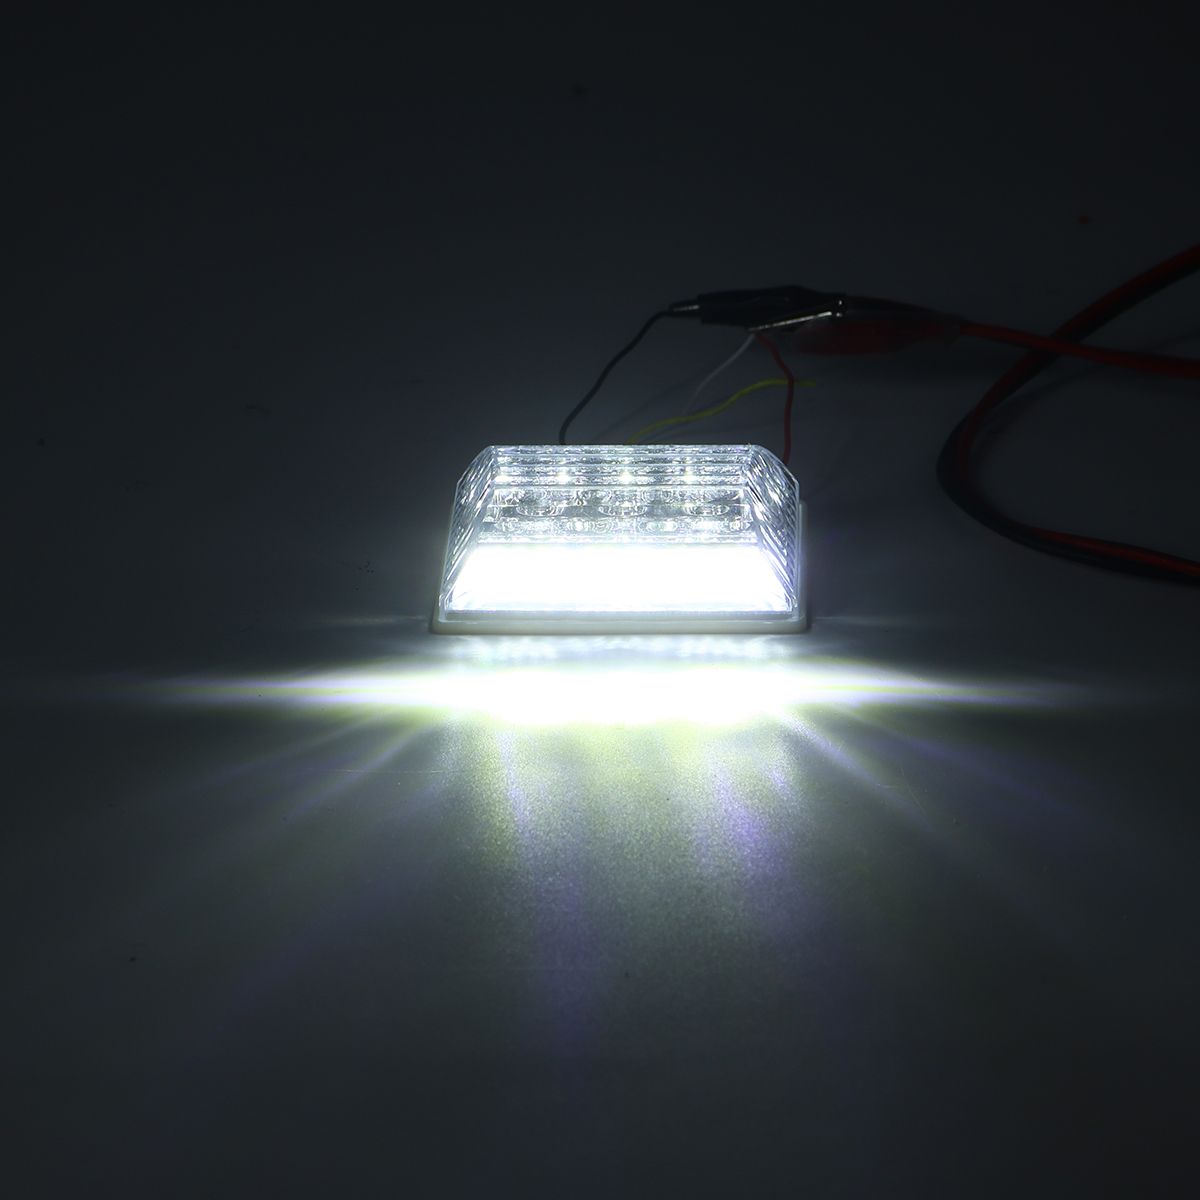 LED-Side-Marker-Lights-Indicator-Lamps-24V-6500K-White-2PCS-for-Truck-Van-Pickup-Trailer-1426552